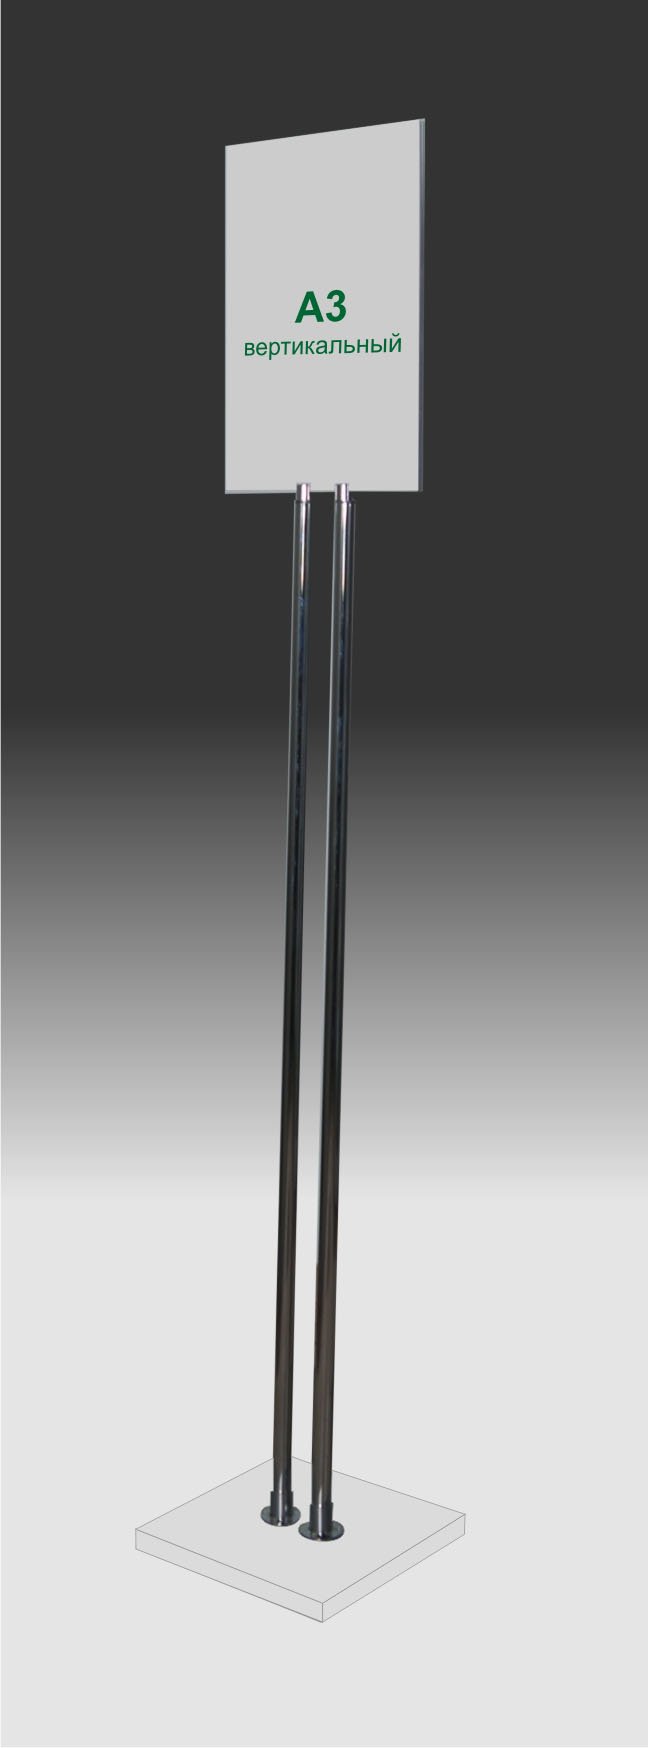 Фото товара: Информационная стойка «Хром А3 универсал» вертикальная, арт. 15501